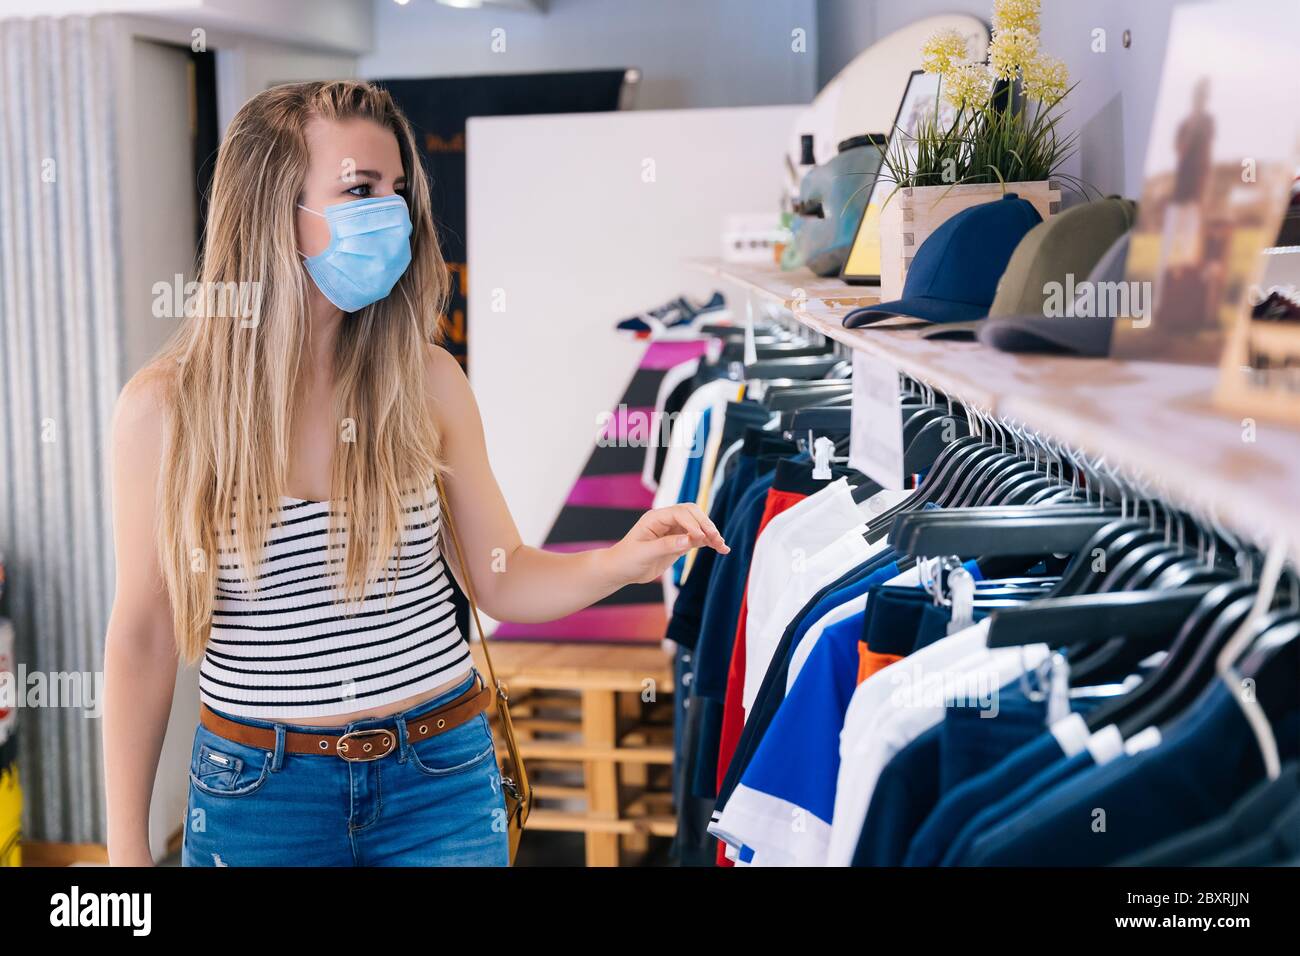 Donna in maschera shopping in un negozio di abbigliamento nella pandemia coronavirus Foto Stock